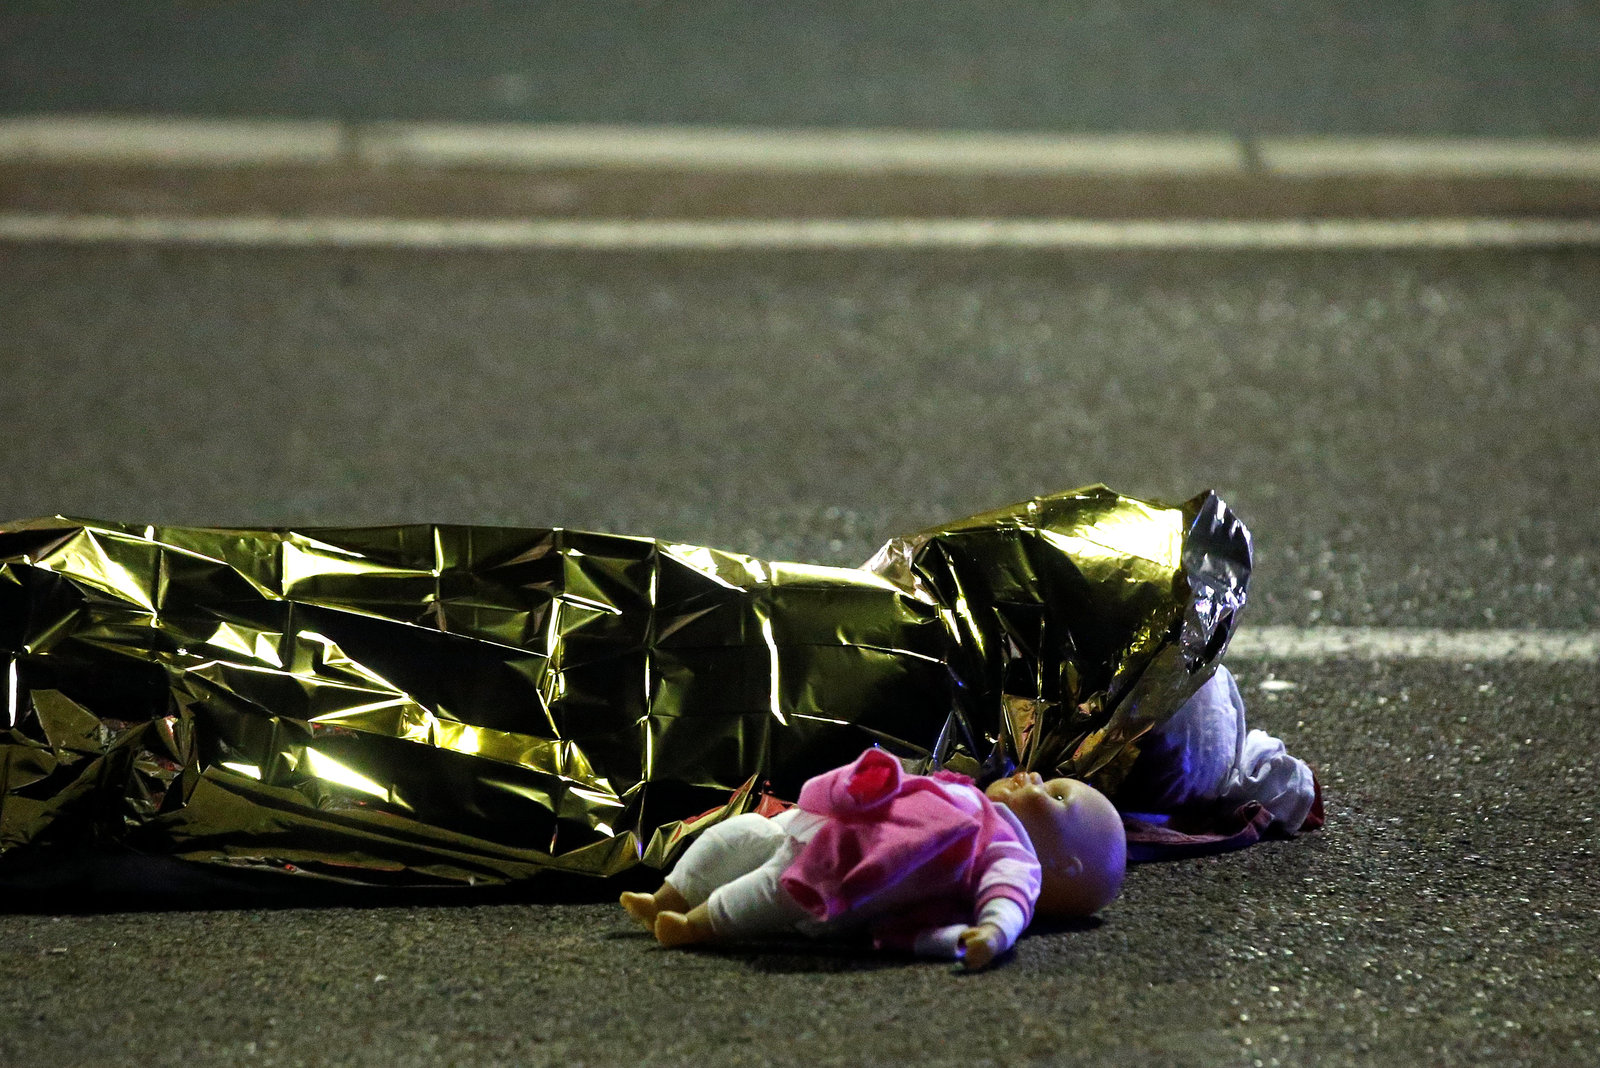 7 月 15 日，法國尼斯發生貨車衝撞人群事件，造成 84 人死亡，包括多名兒童。